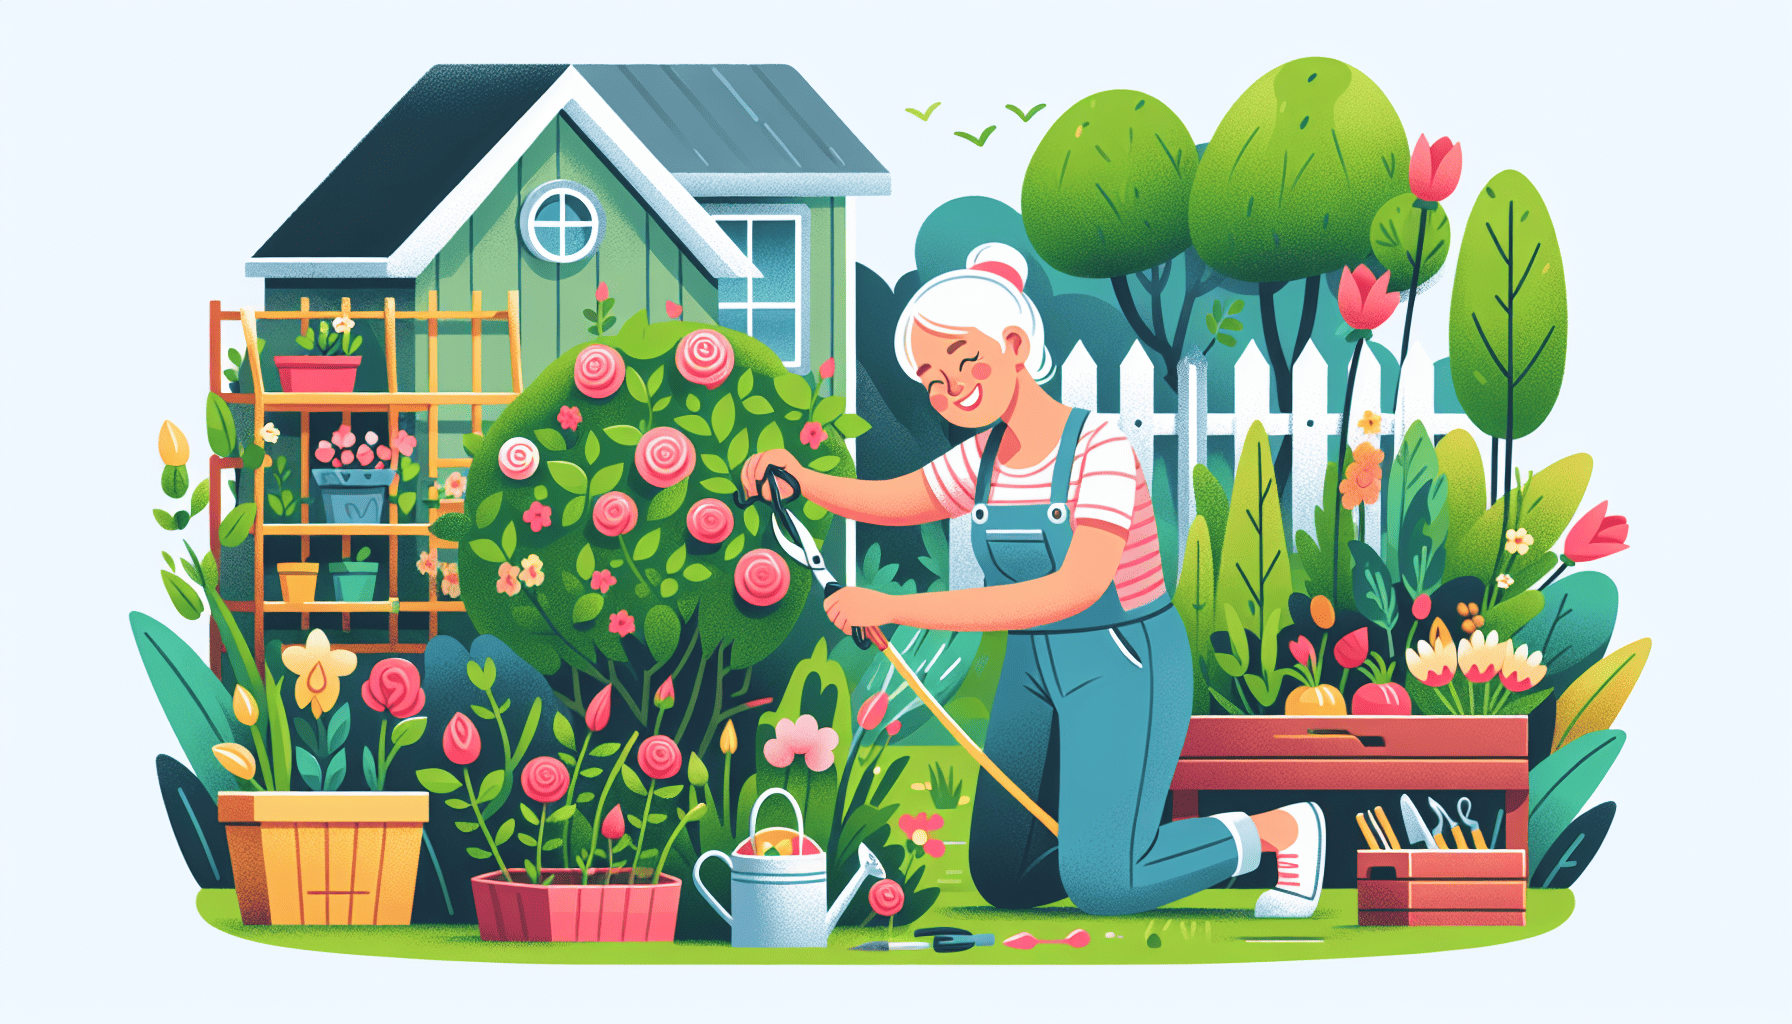 Retiree gardening as a side hustle